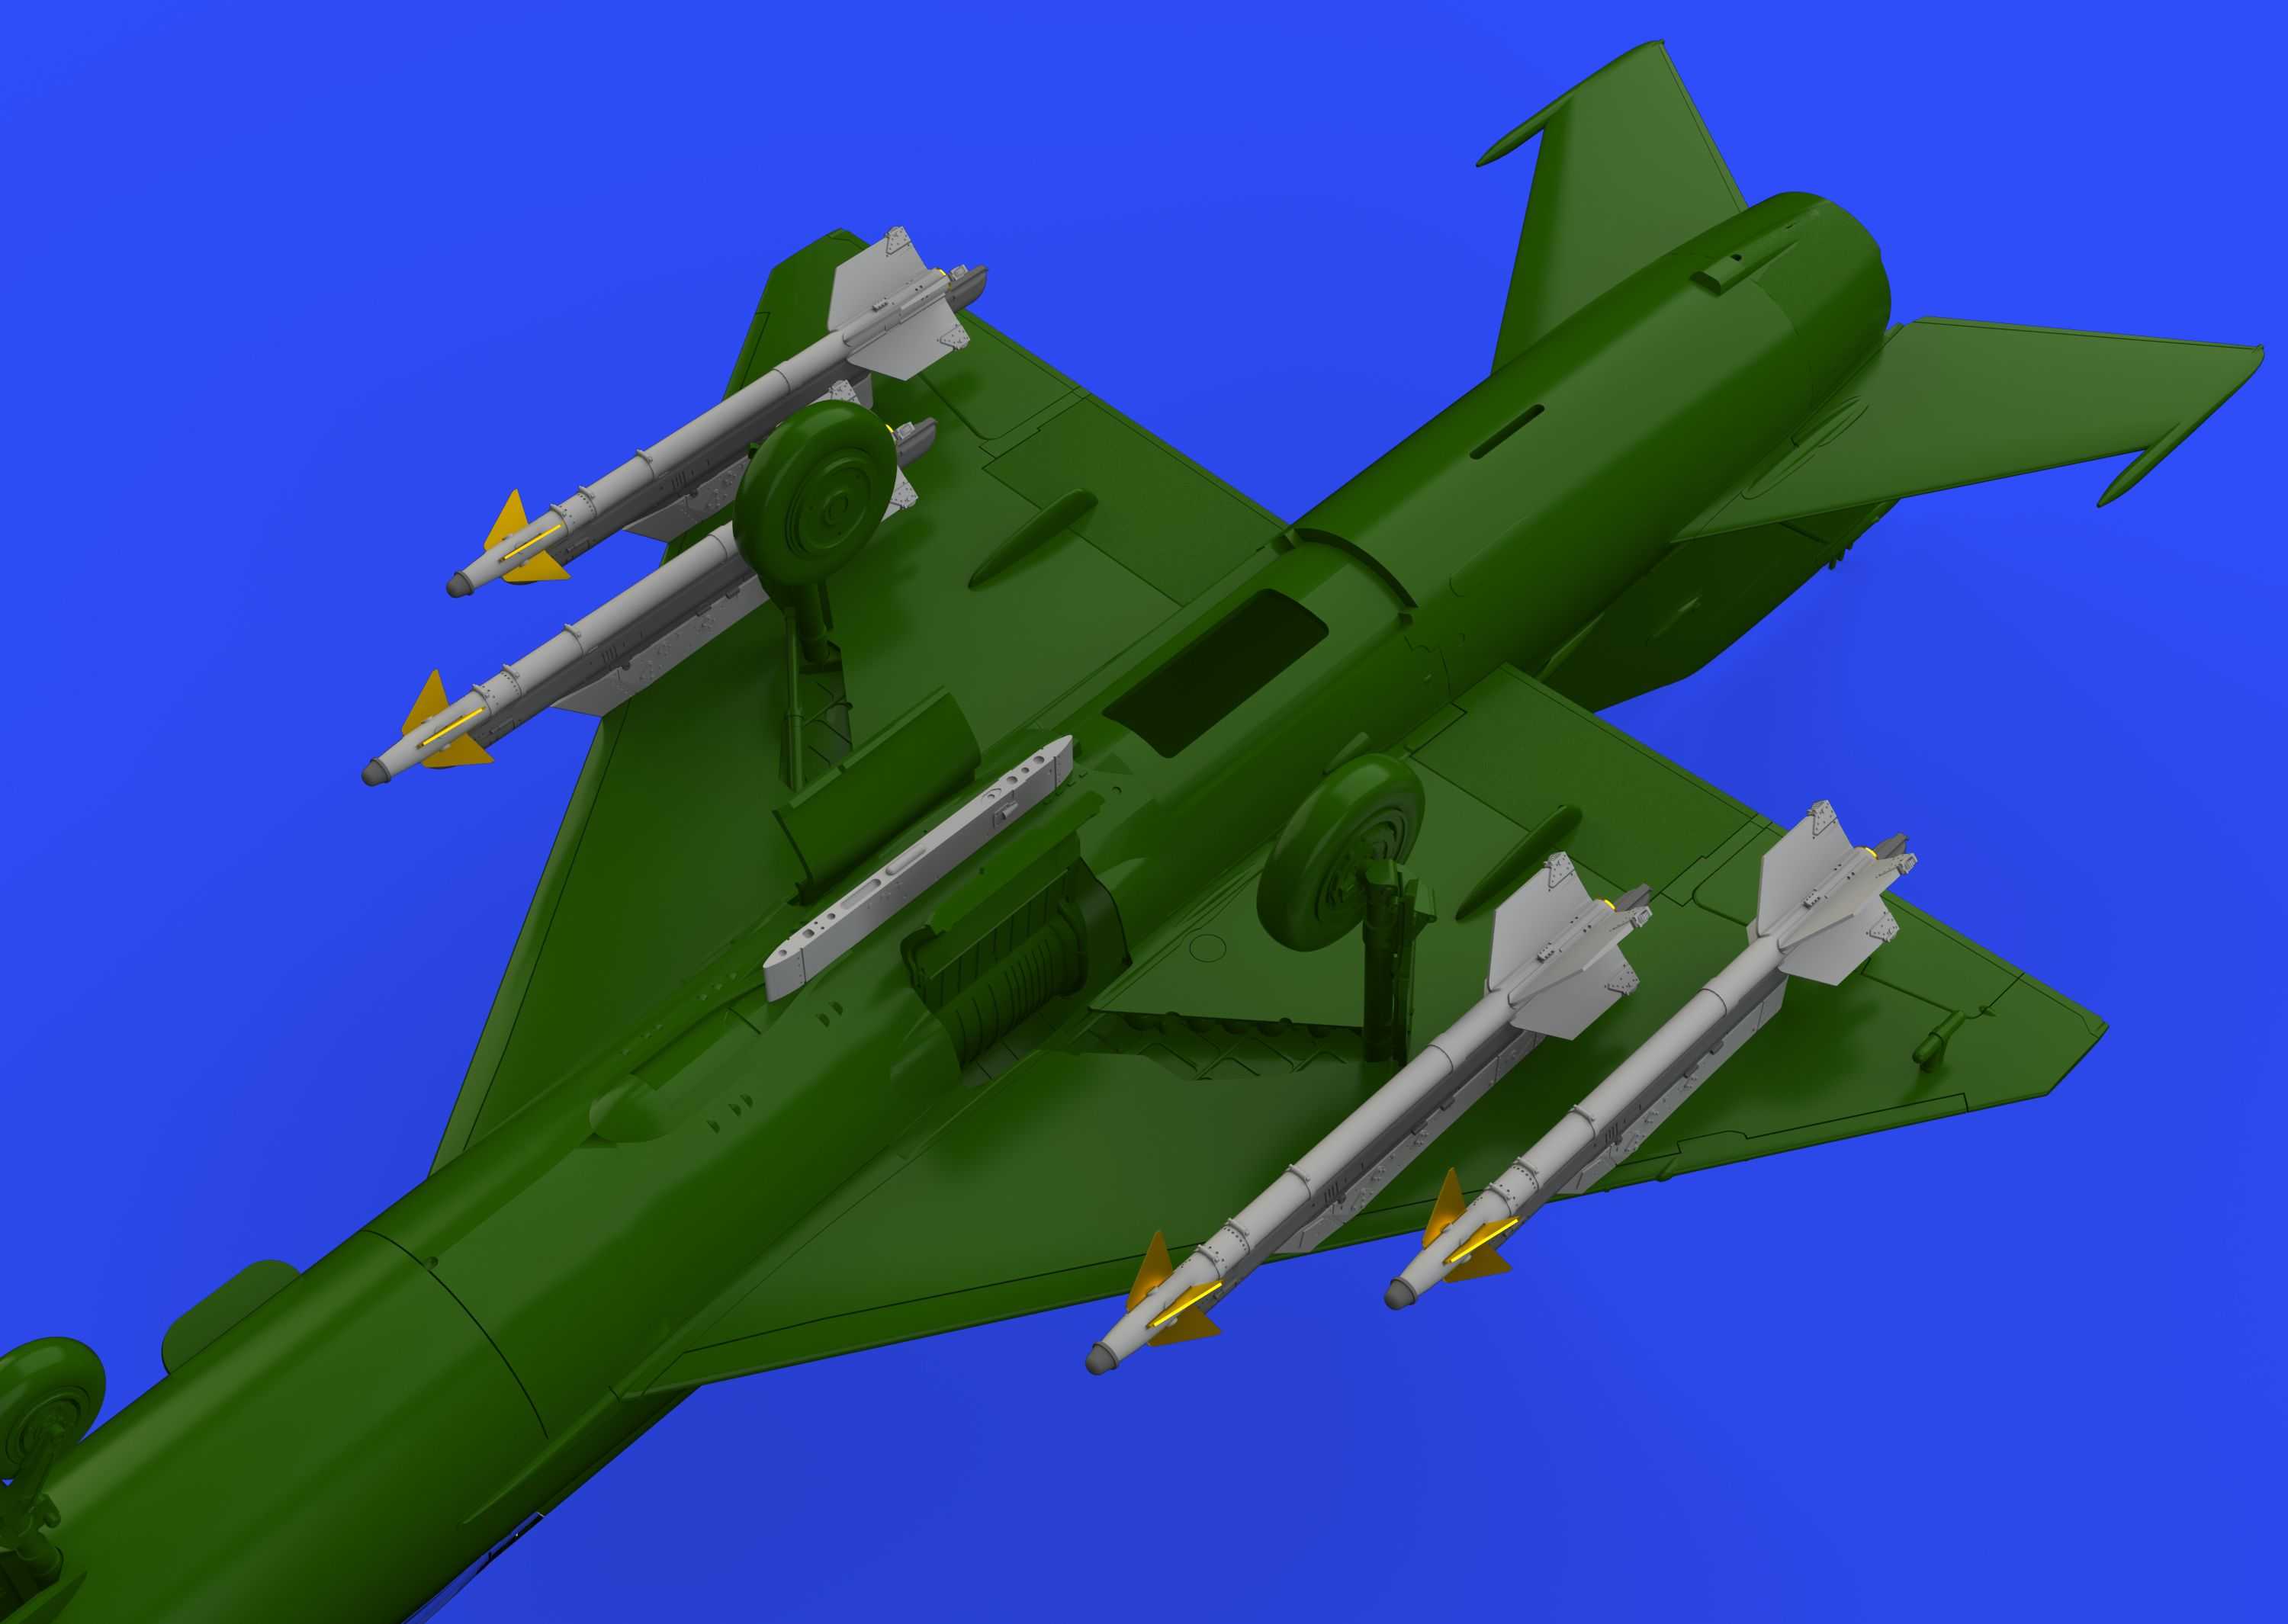 Accessoires - Missiles R-13M avec pylônes pour Mikoyan MiG-21MF (conçu